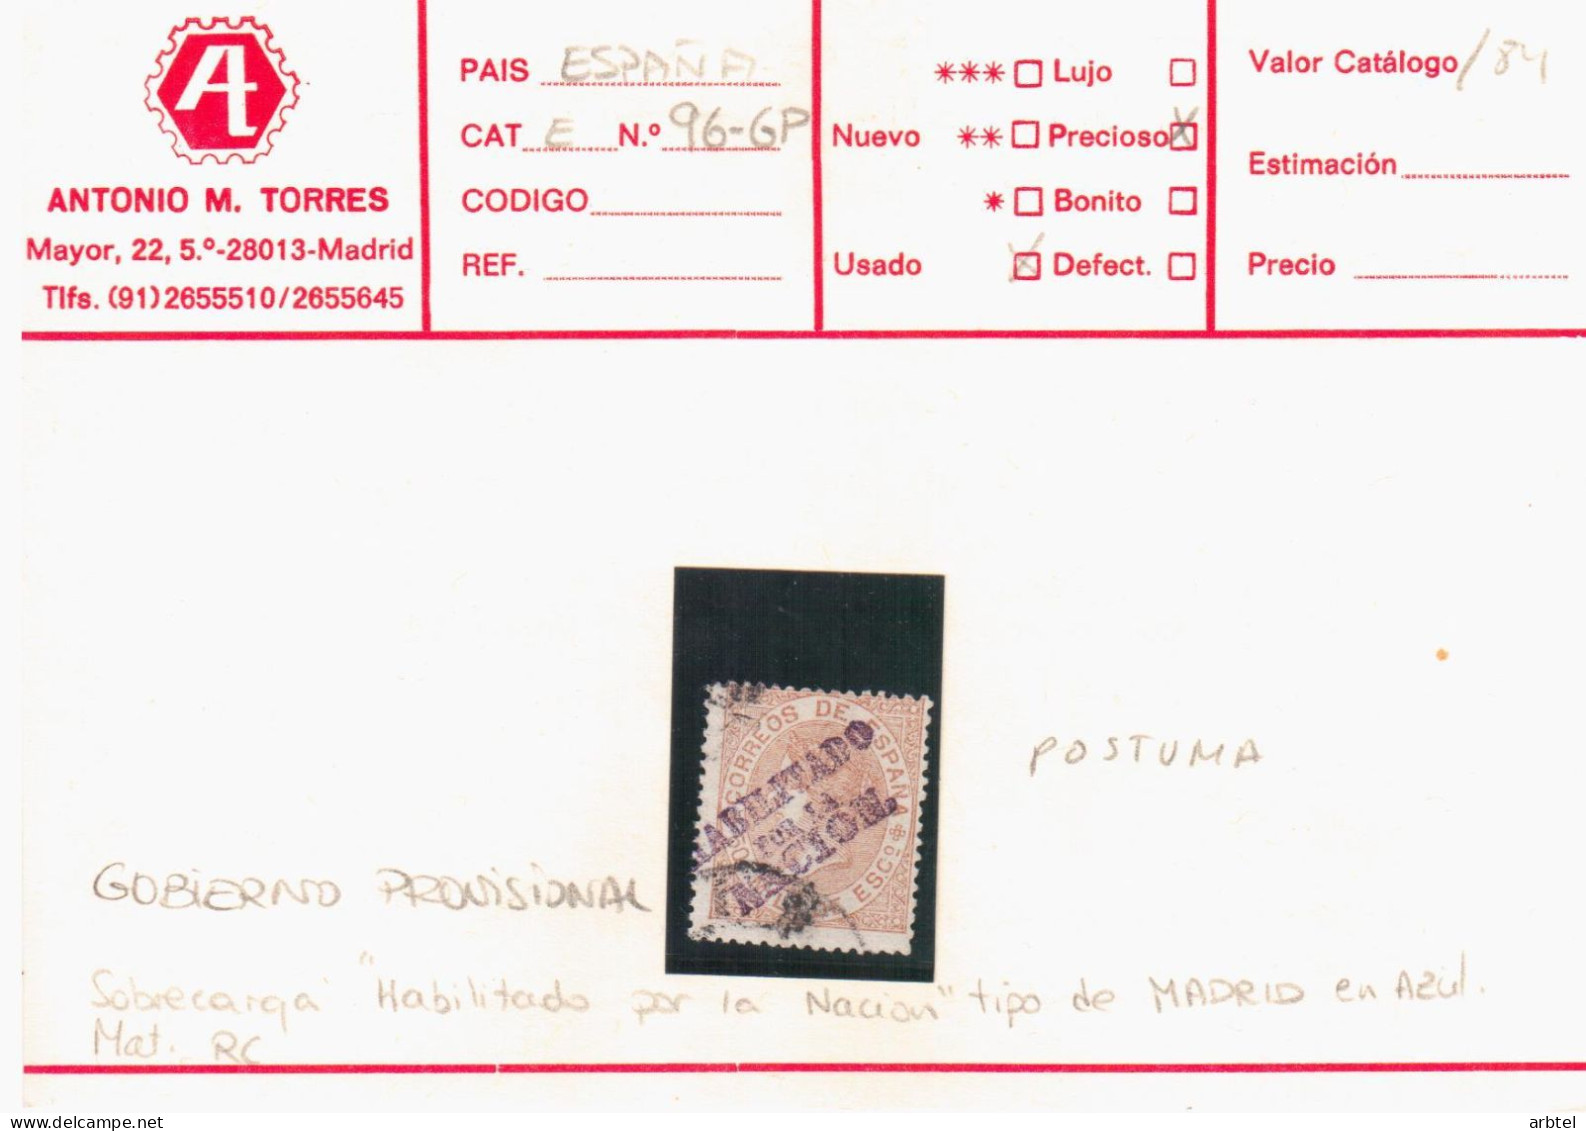 ISABEL II HABILITADO POR LA NACION - Used Stamps